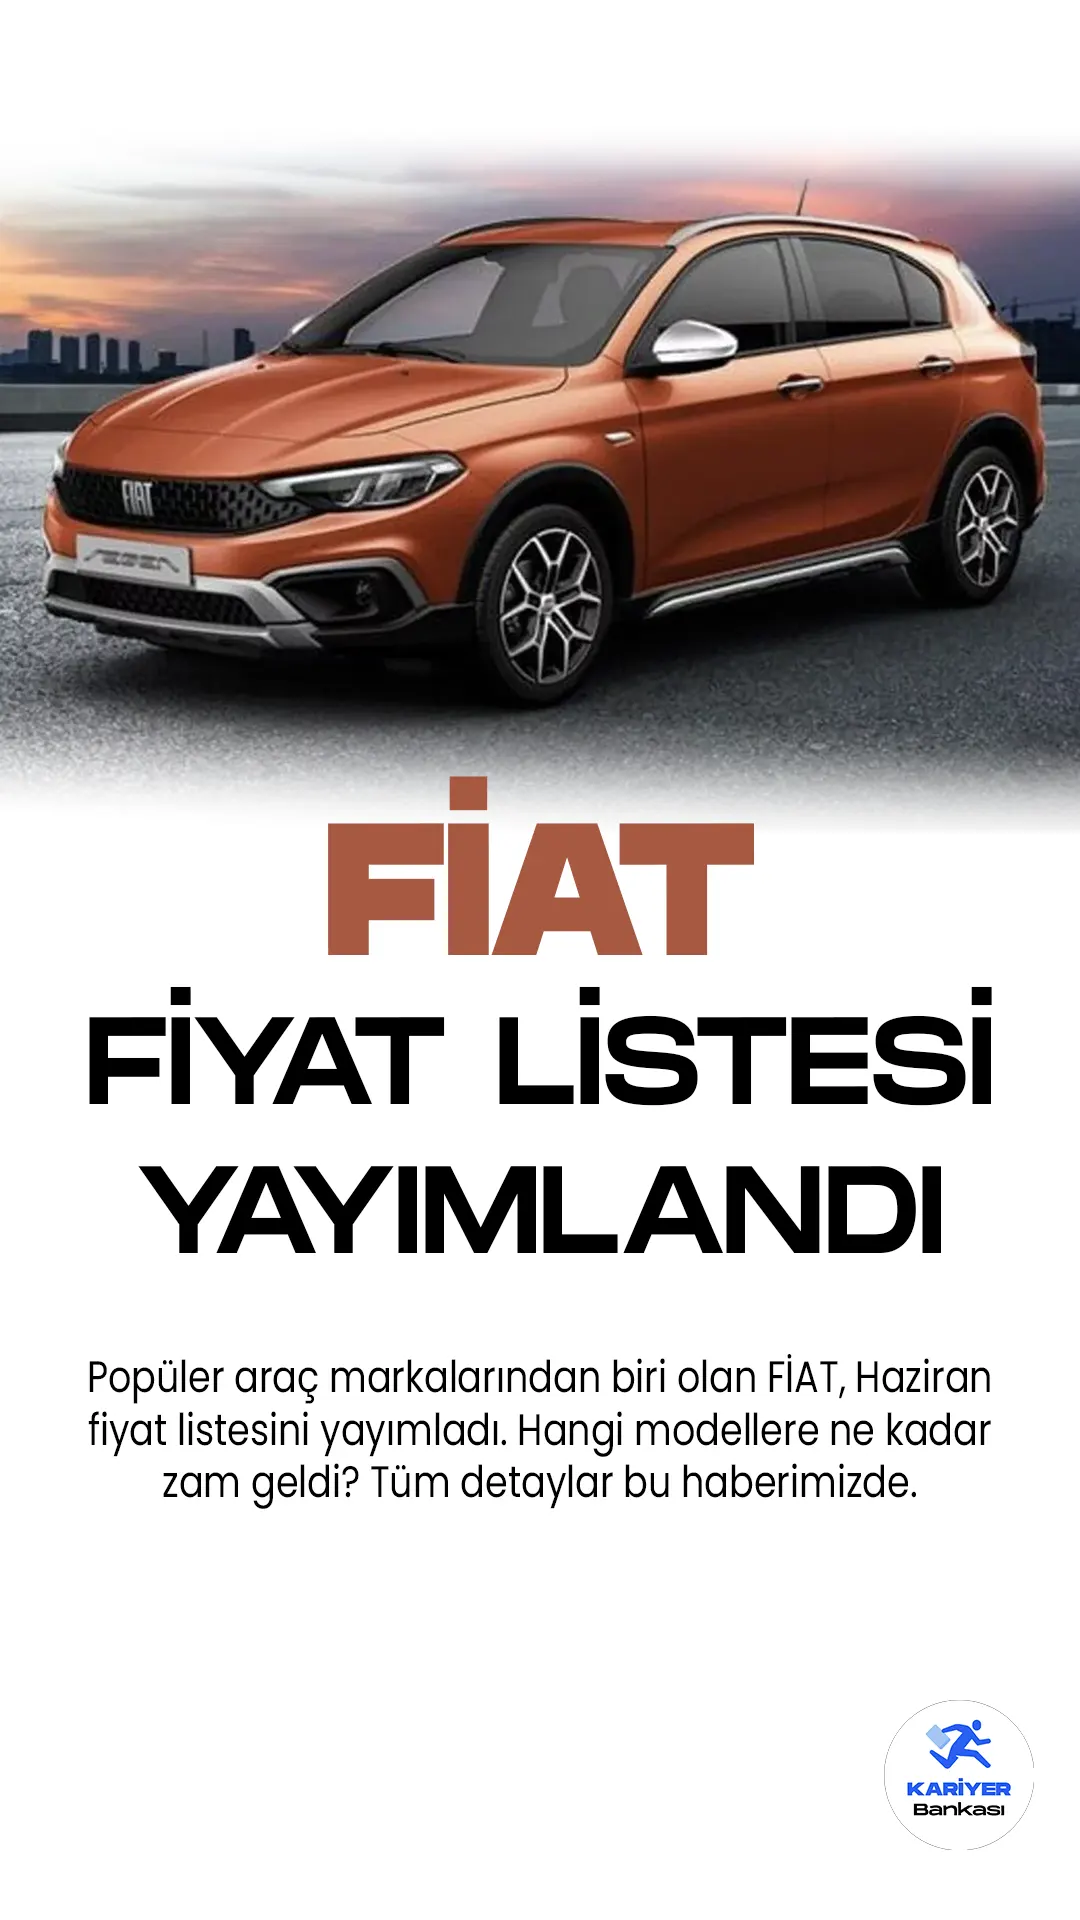 Fiat Haziran 2023 Fiyat Listesi Yayımlandı. Türkiye'nin en popüler araç markaları arasında yer alan Fiat, fiyat listelerini güncelledi. Fiat, otomotiv sektöründe başarılı bir marka olarak dikkat çekiyor. Araç modellerinden biri olan Fiat Egea, şık tasarımı ve güvenilir performansıyla beğeni topluyor. Egea Cross ise şehir içi ve dışında kullanım için ideal bir seçenek olarak öne çıkıyor. Hatchback versiyonu, kompakt yapıya sahip olup pratik kullanım sunuyor.